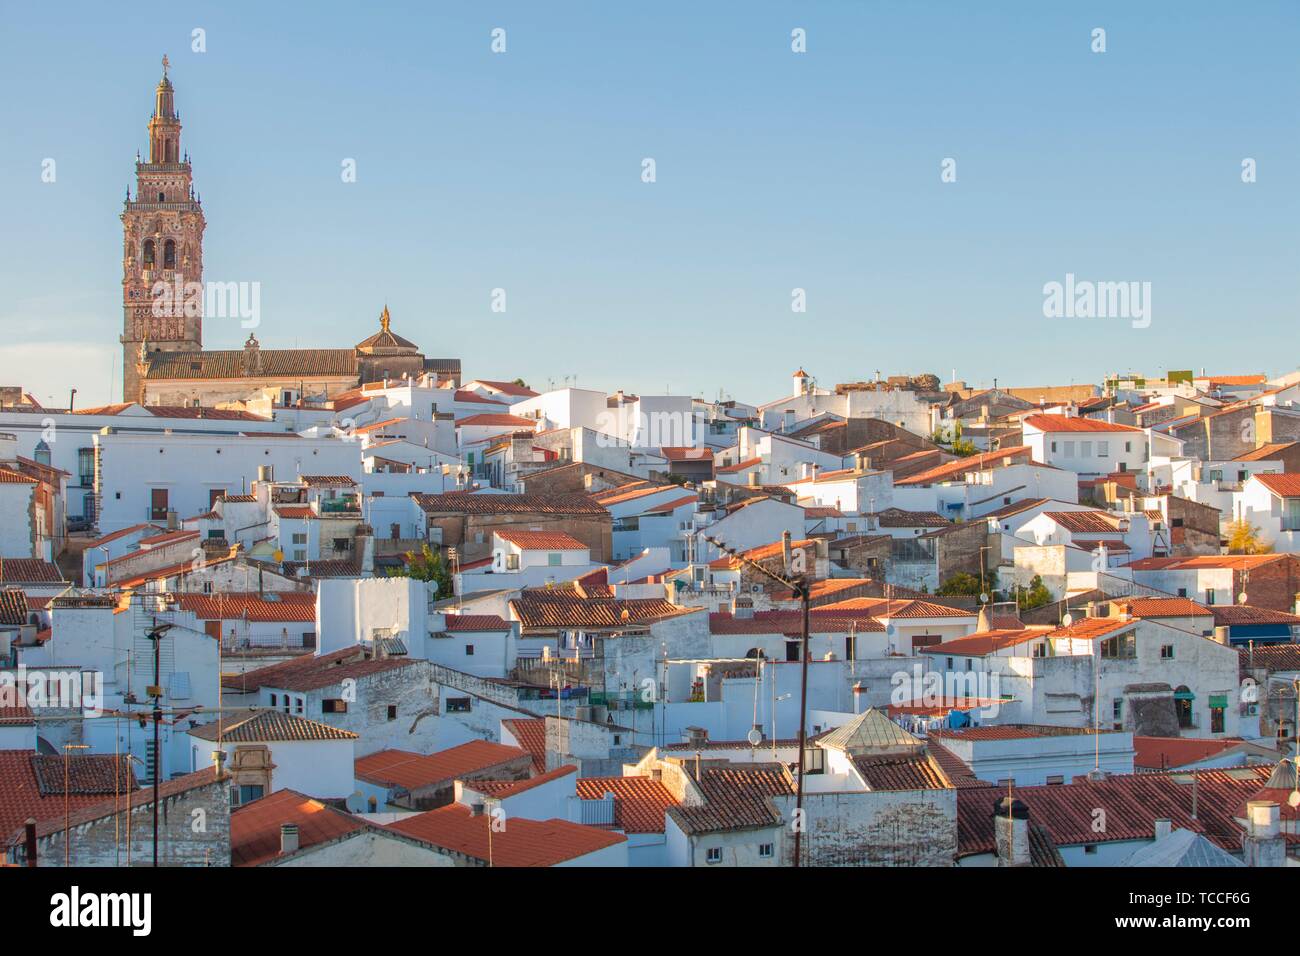 Jerez de los Caballeros Stadtbild von Templer Festung Aussichtspunkt. Kirche von San Bartolome Turm an der Unterseite. Stockfoto